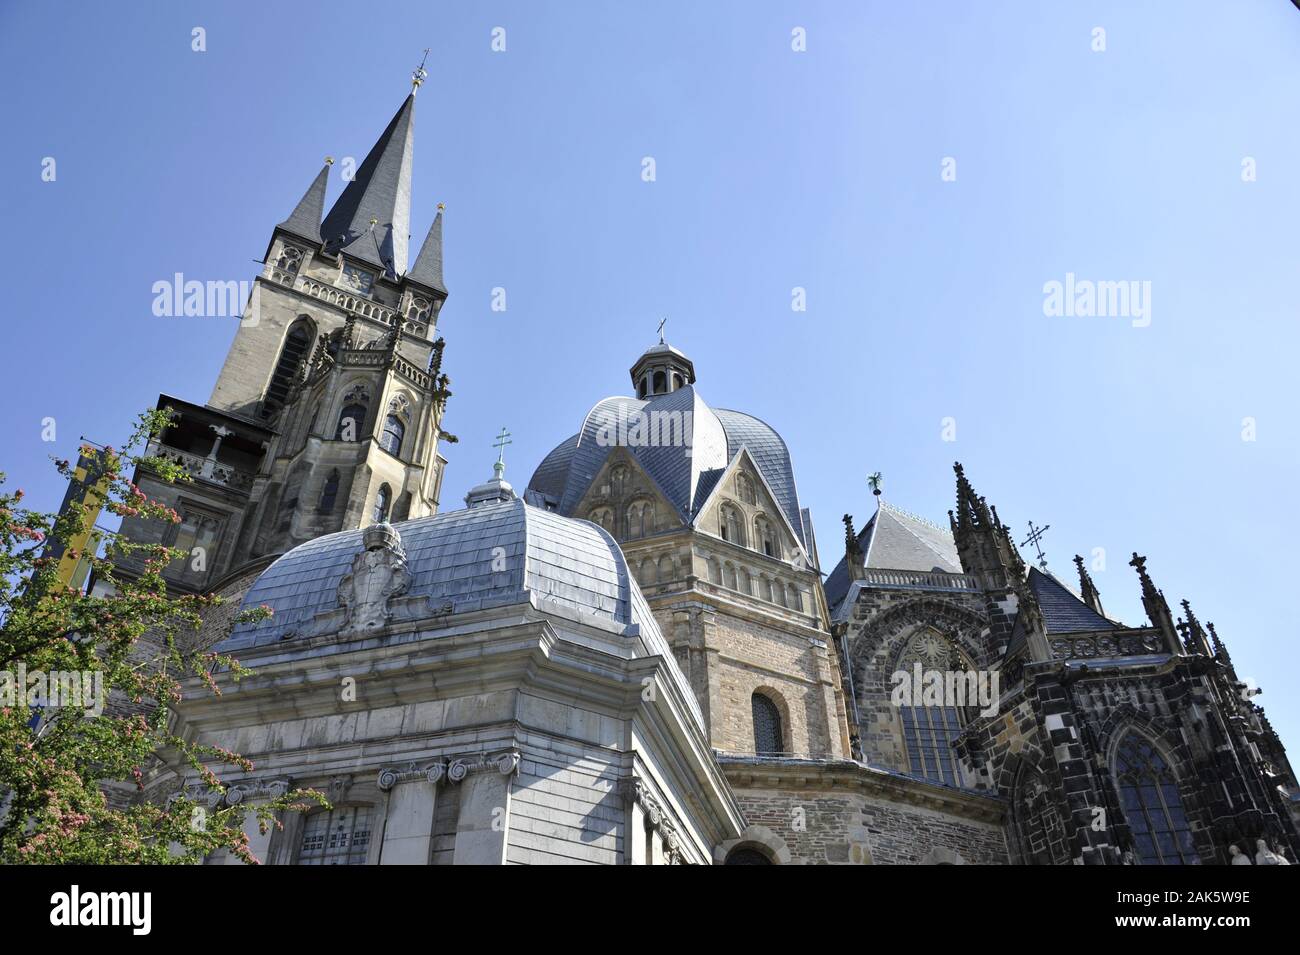 Aachen: Aussenansicht des Aachener Doms, Eifel | usage worldwide Stock Photo